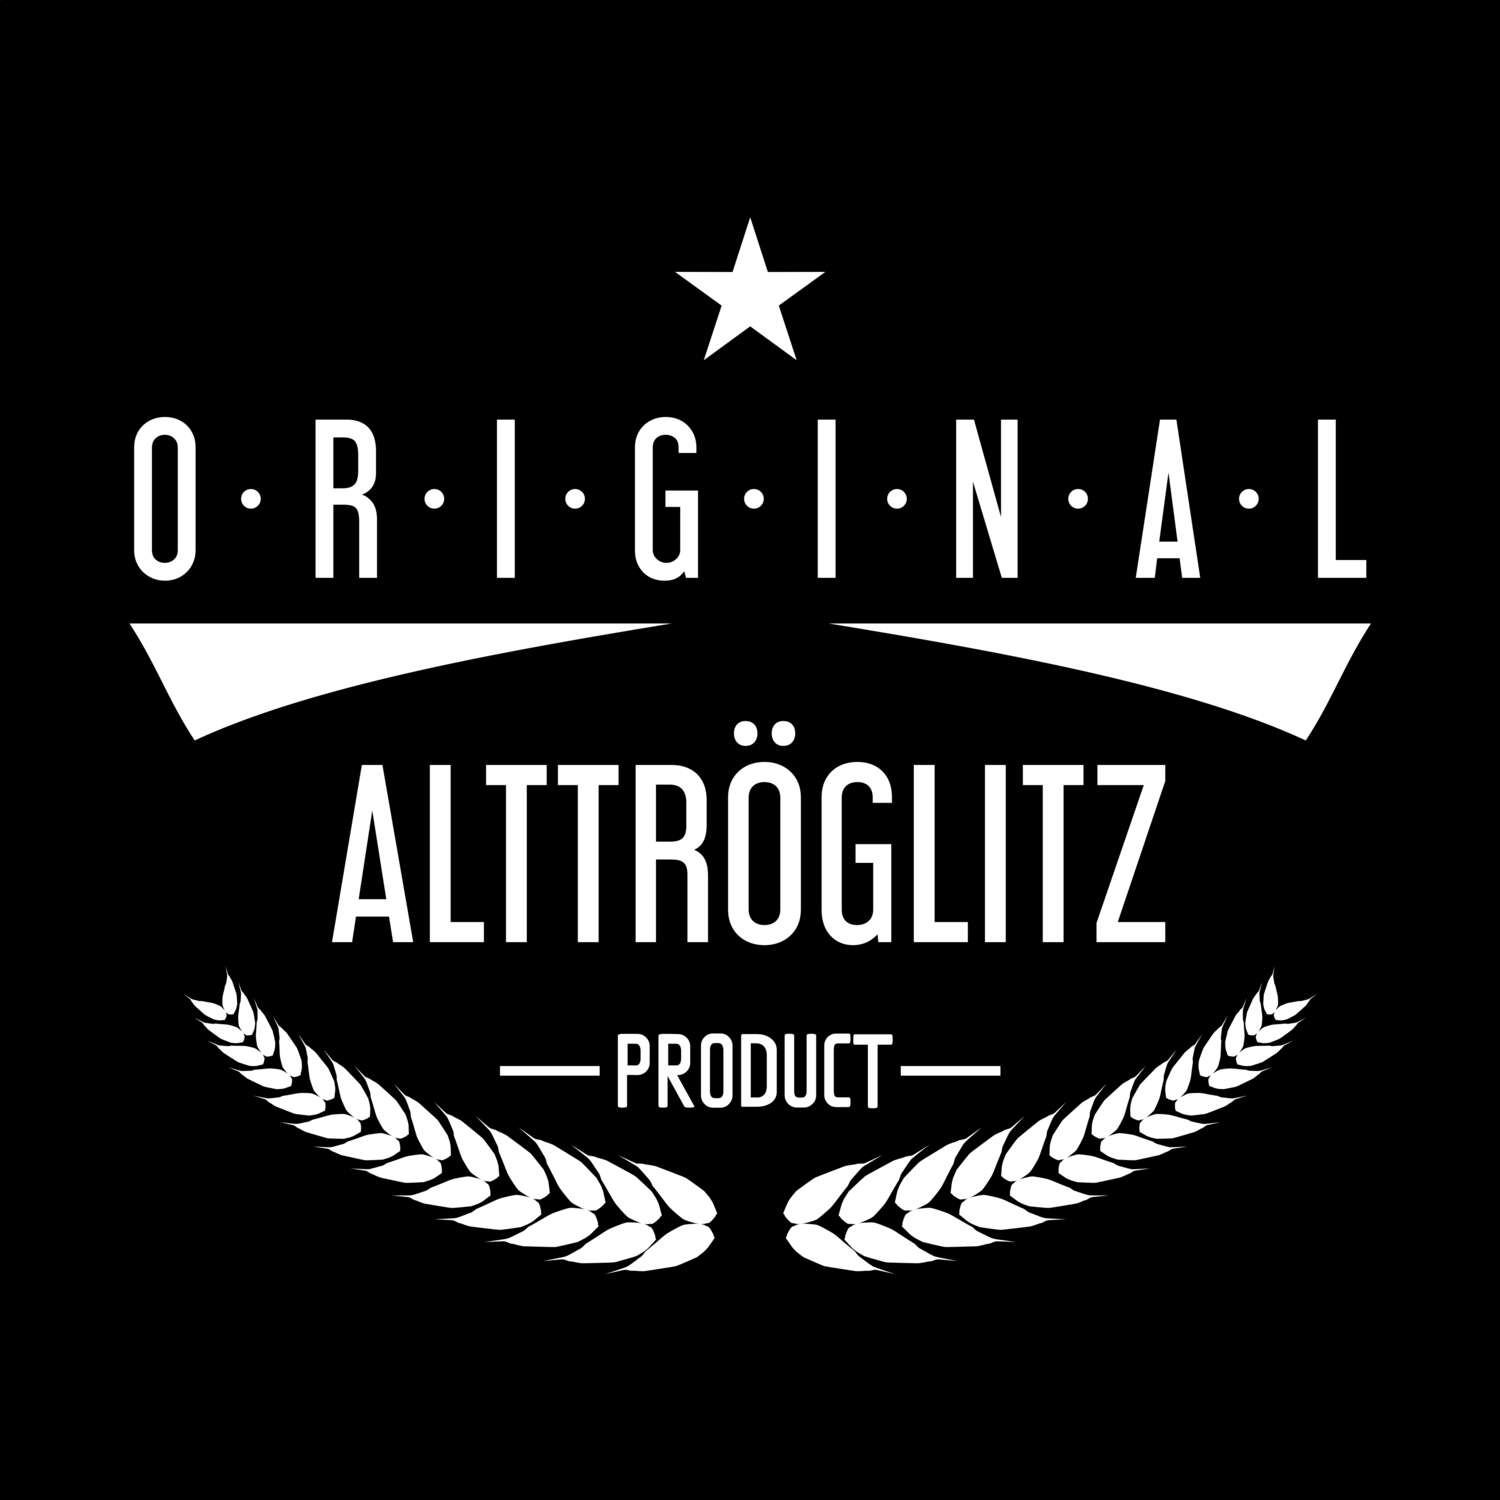 Alttröglitz T-Shirt »Original Product«